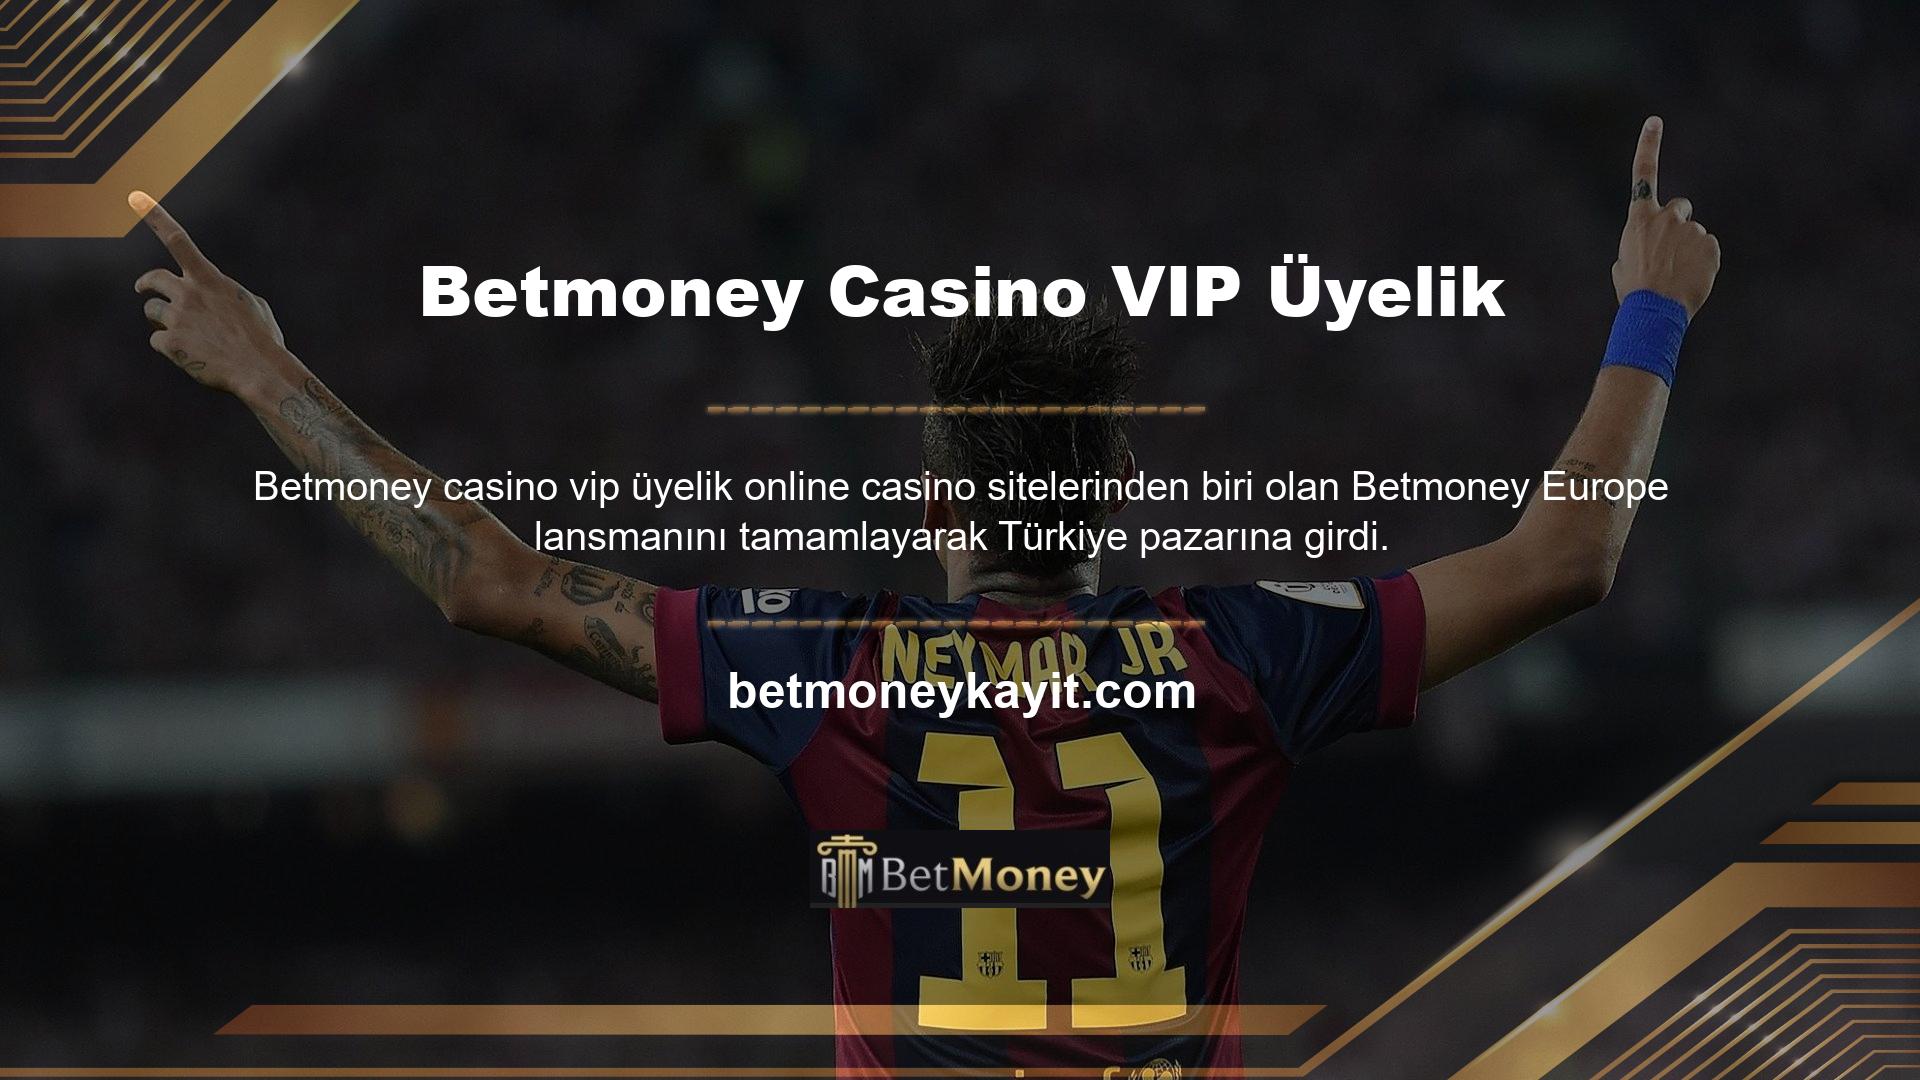 Betmoney Casino VIP Üyelik altyapısı, promosyonları ve oyun çeşitliliği olan bir iştir